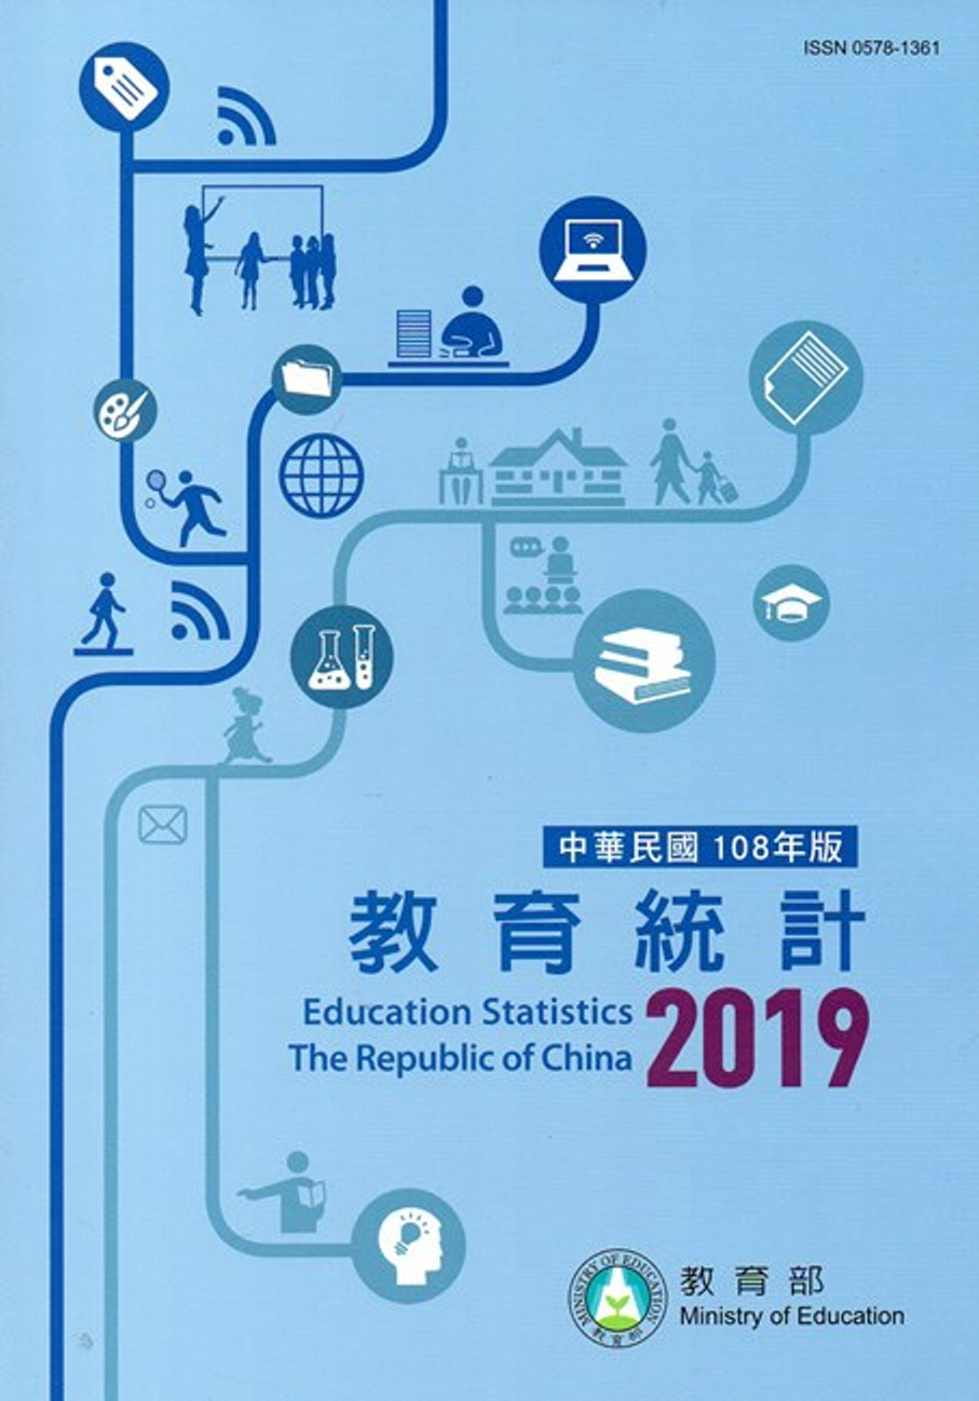 中華民國教育統計108年